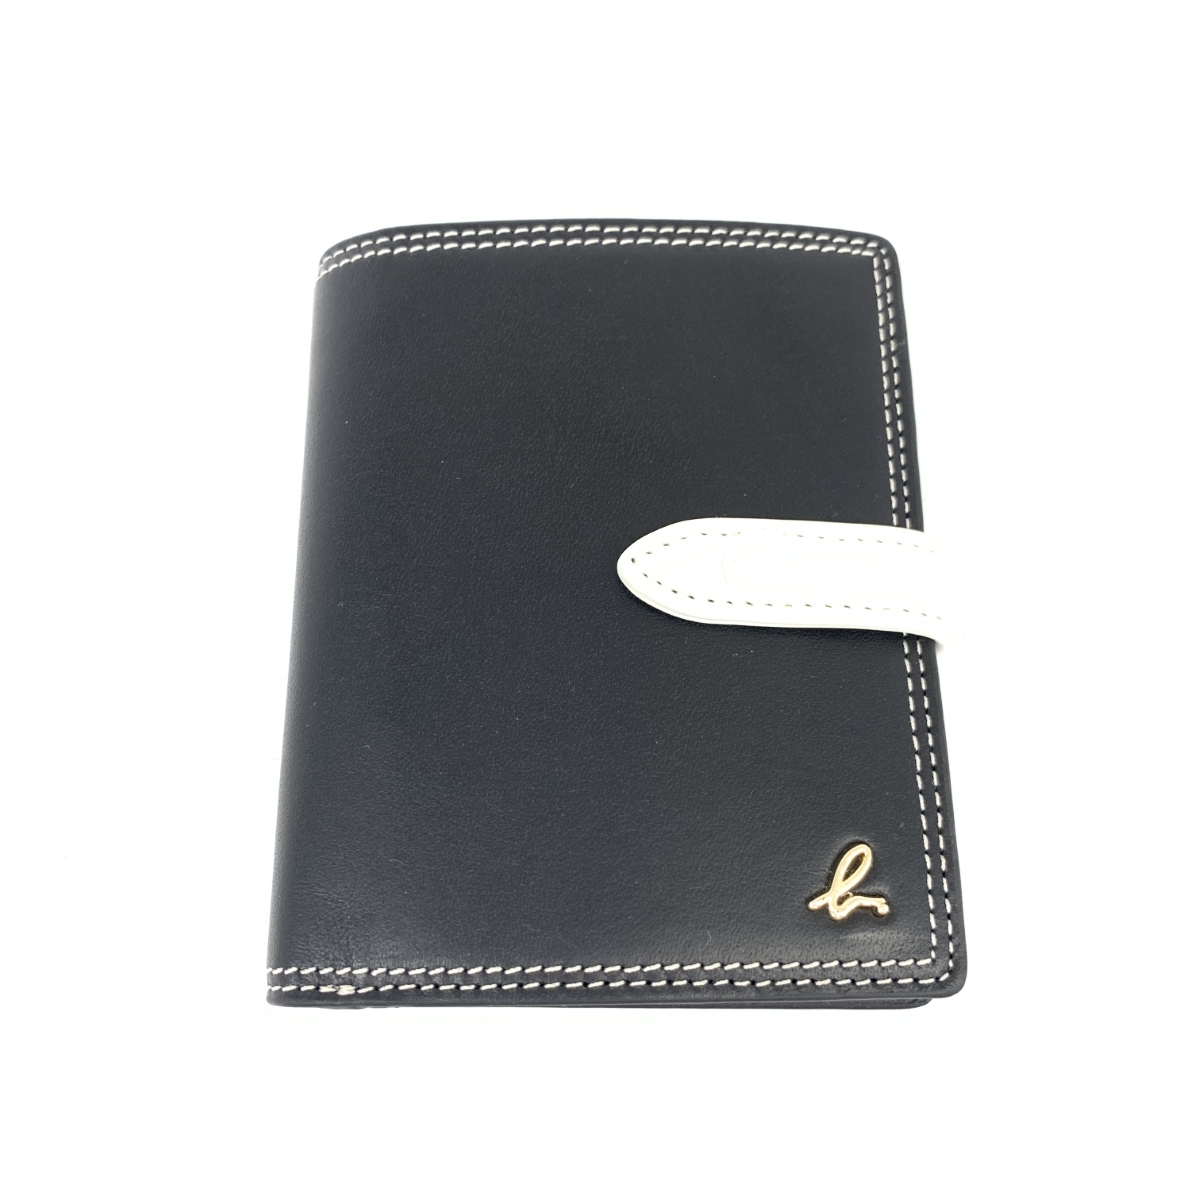 新品同様◆agnes b. アニエスベー 財布◆RAW02−01 ブラック レザー bロゴ/ダブルステッチ レディース 財布 ウォレット サイフ 札入れのサムネイル